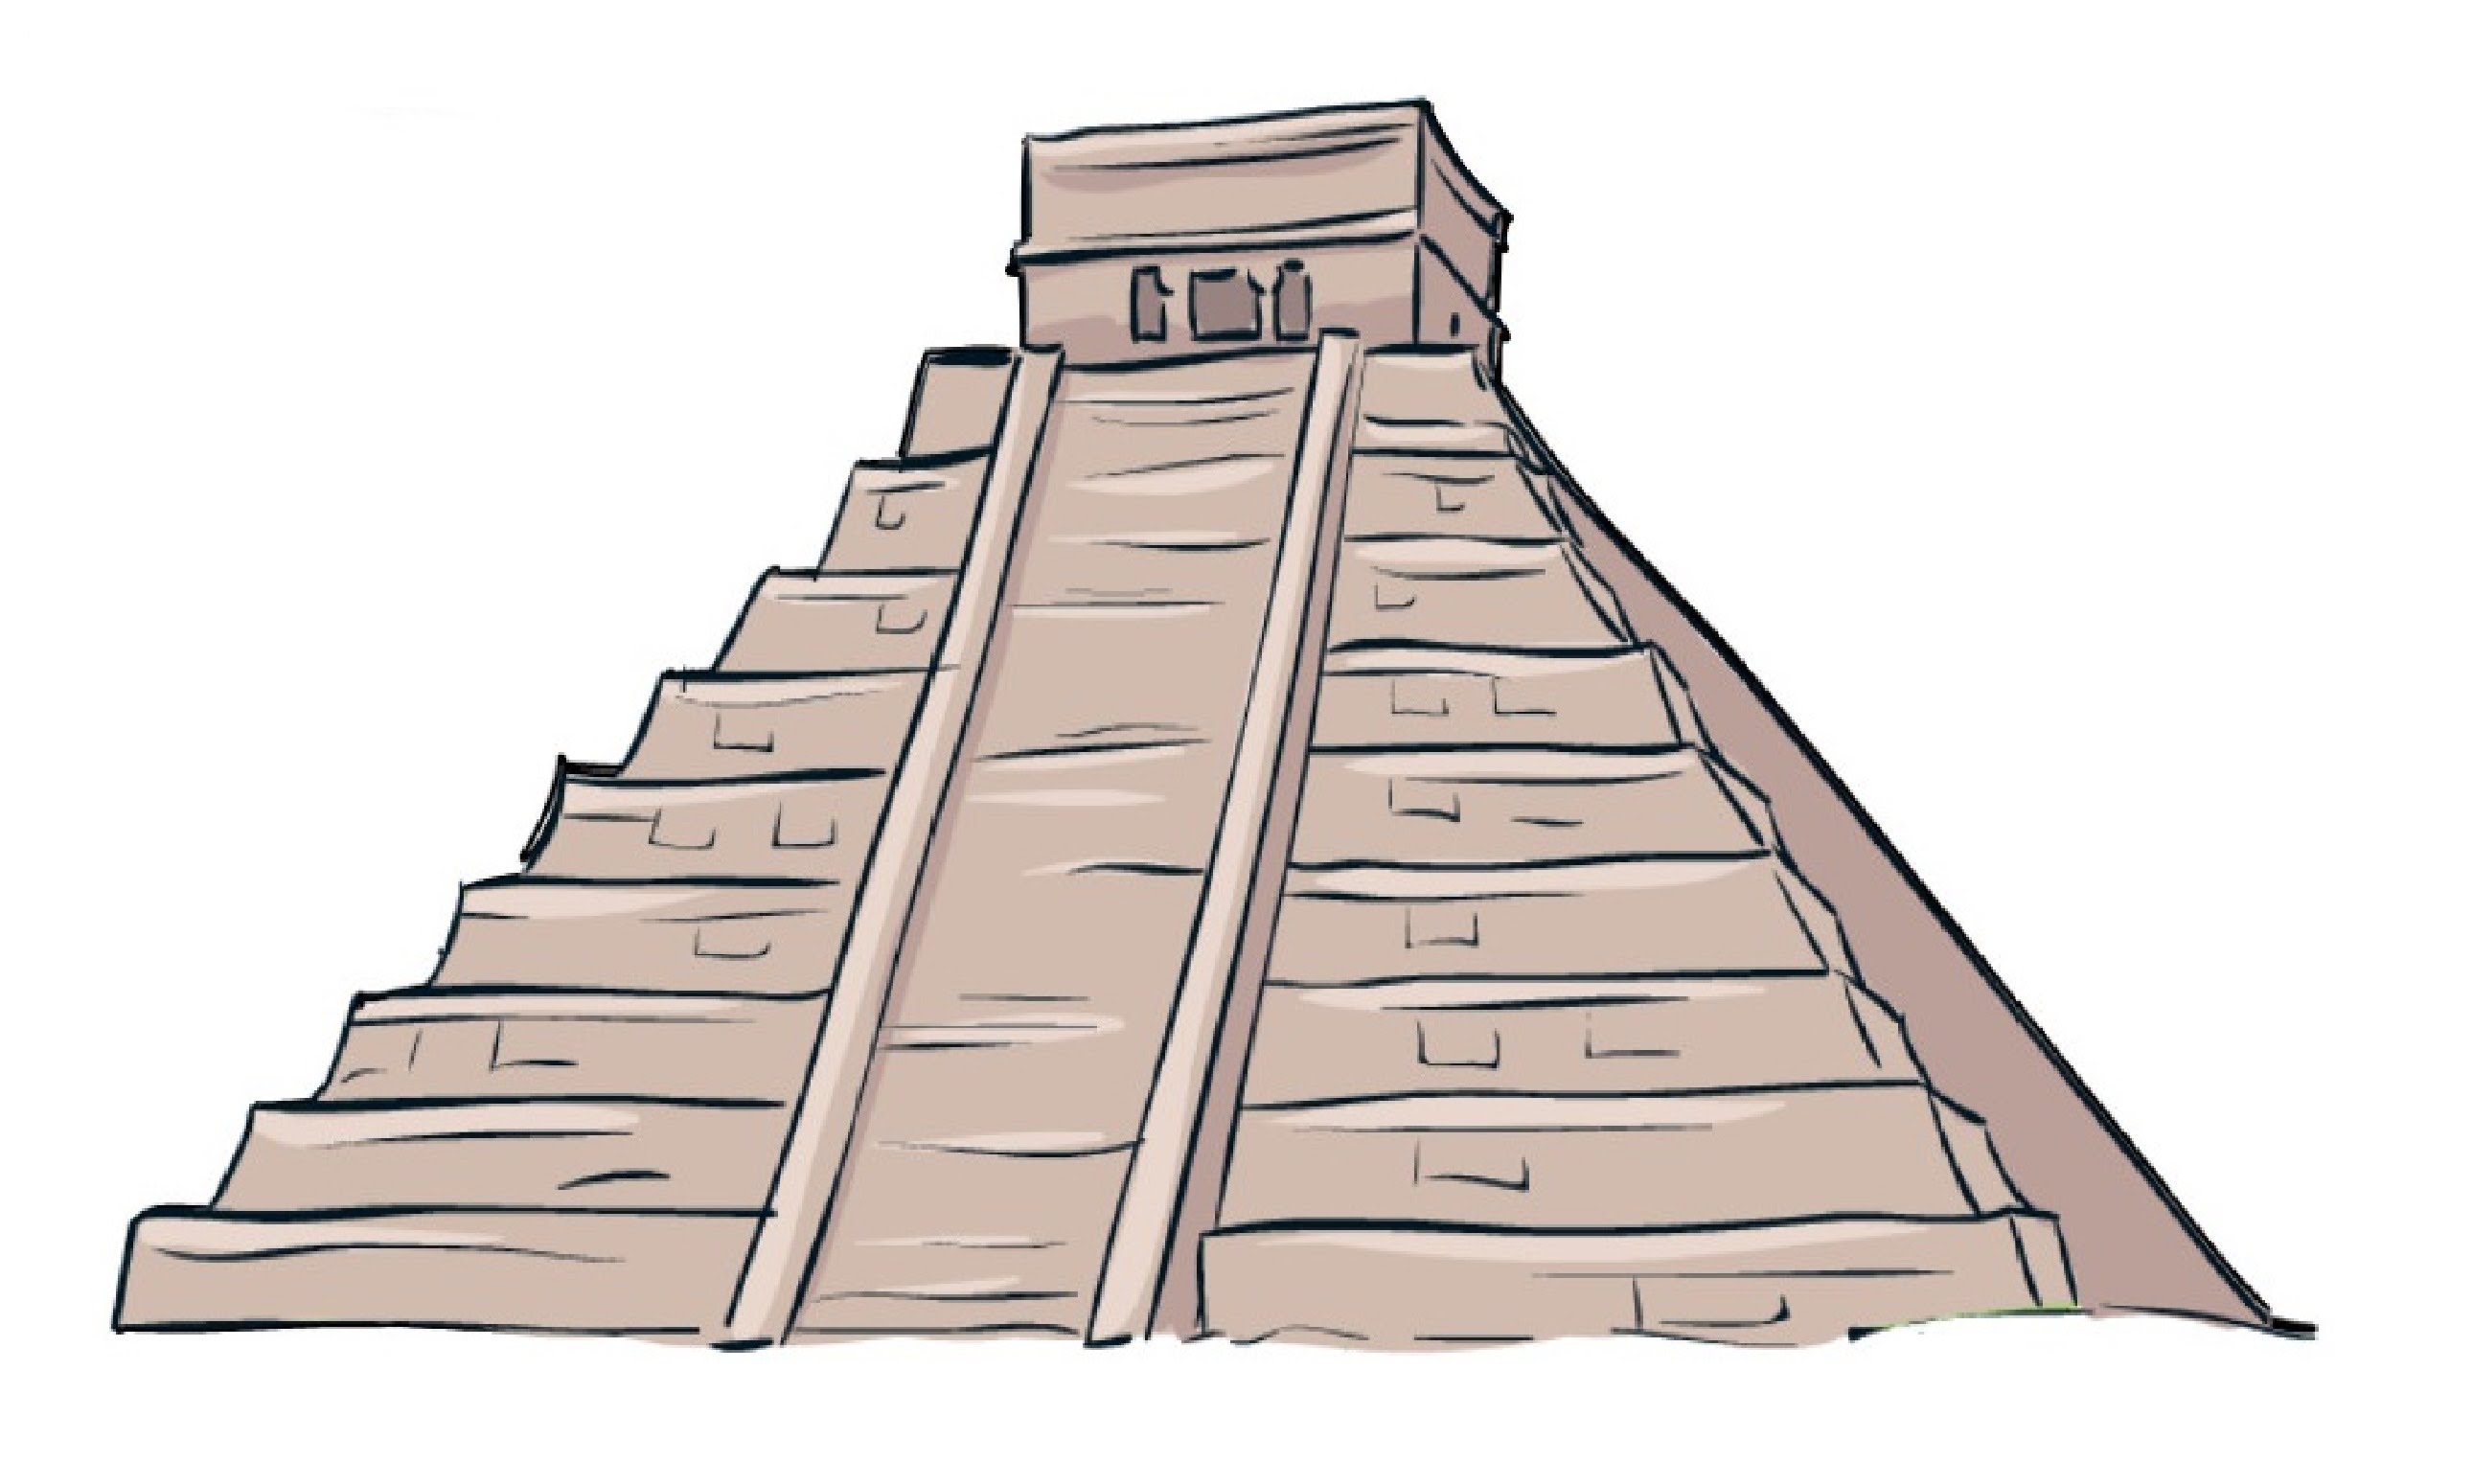 Mayan Pyramid Drawing at GetDrawings Free download